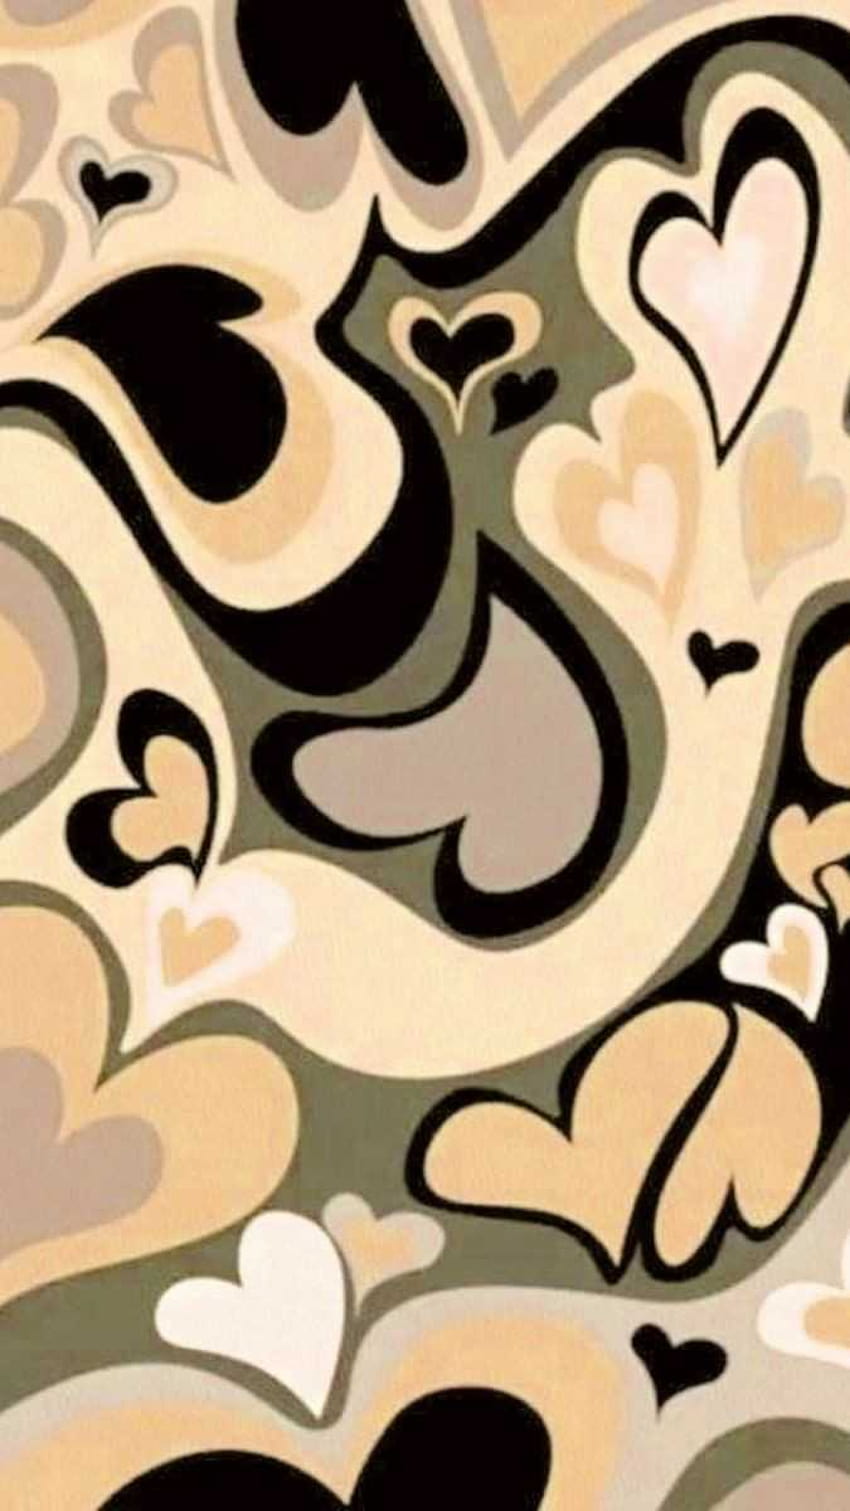 Brown Heart Wallpaper, một trong những kiểu hình nền phổ biến nhất, mang lại vẻ đẹp ấn tượng và đậm chất sắc nâu cho màn hình điện thoại của bạn. Hãy cùng xem hình để cảm nhận sức mạnh nó mang lại nhé!